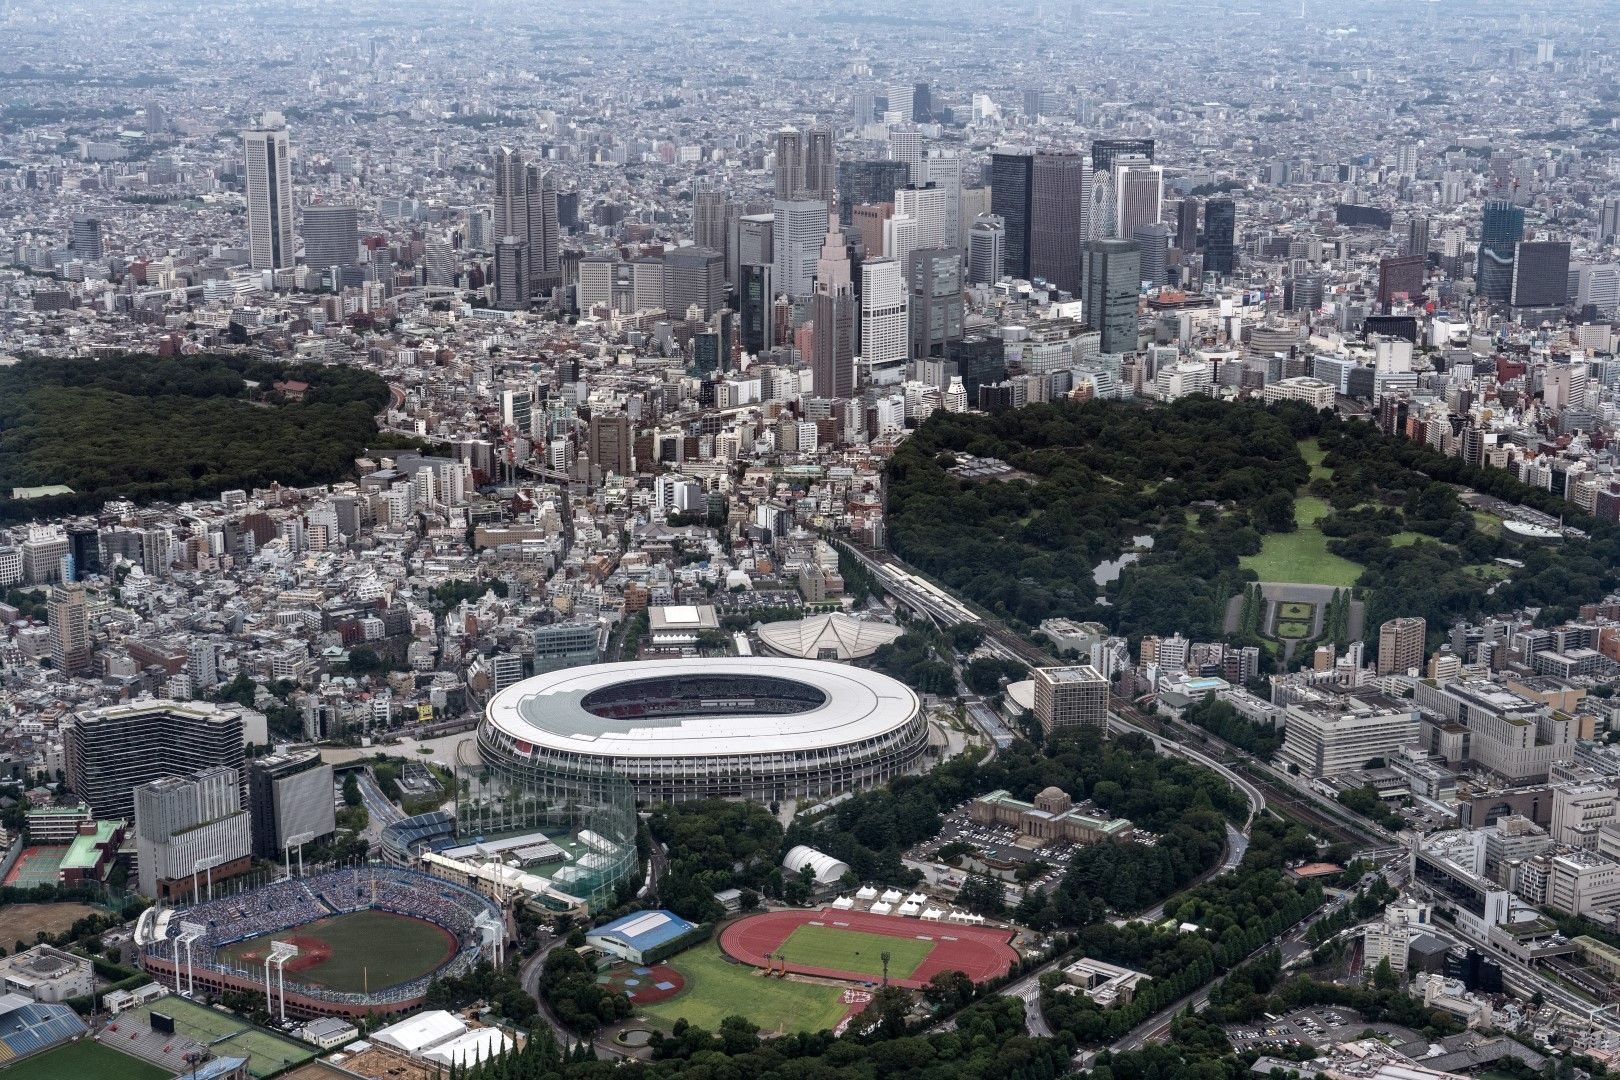 Националният стадион в Токио - построен през 2016-а на мястото на стария такъв, който бе взривен и разрушен. Той е сърцето на града, част от градската среда и силует. Капацитетът е 68 000 зрители, но няма да има повече от 10 хиляди по време на игрите.